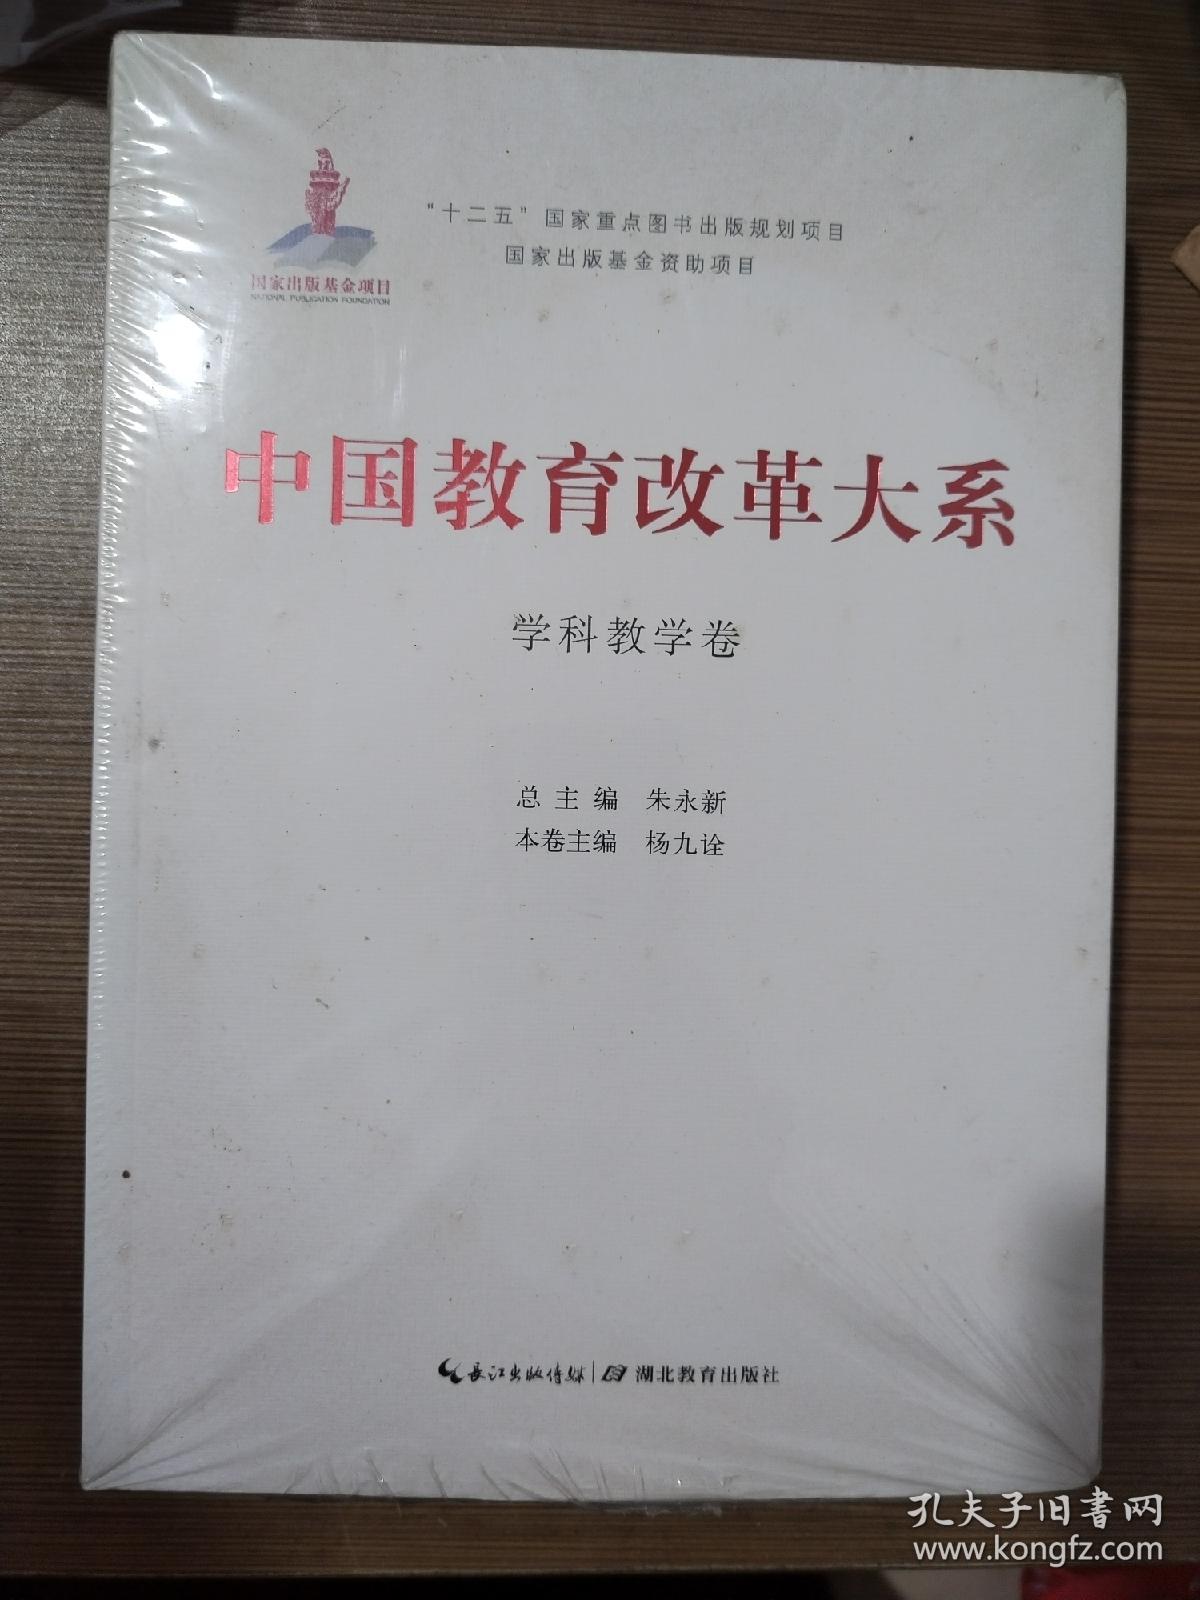 中国教育改革大系  学科教学卷